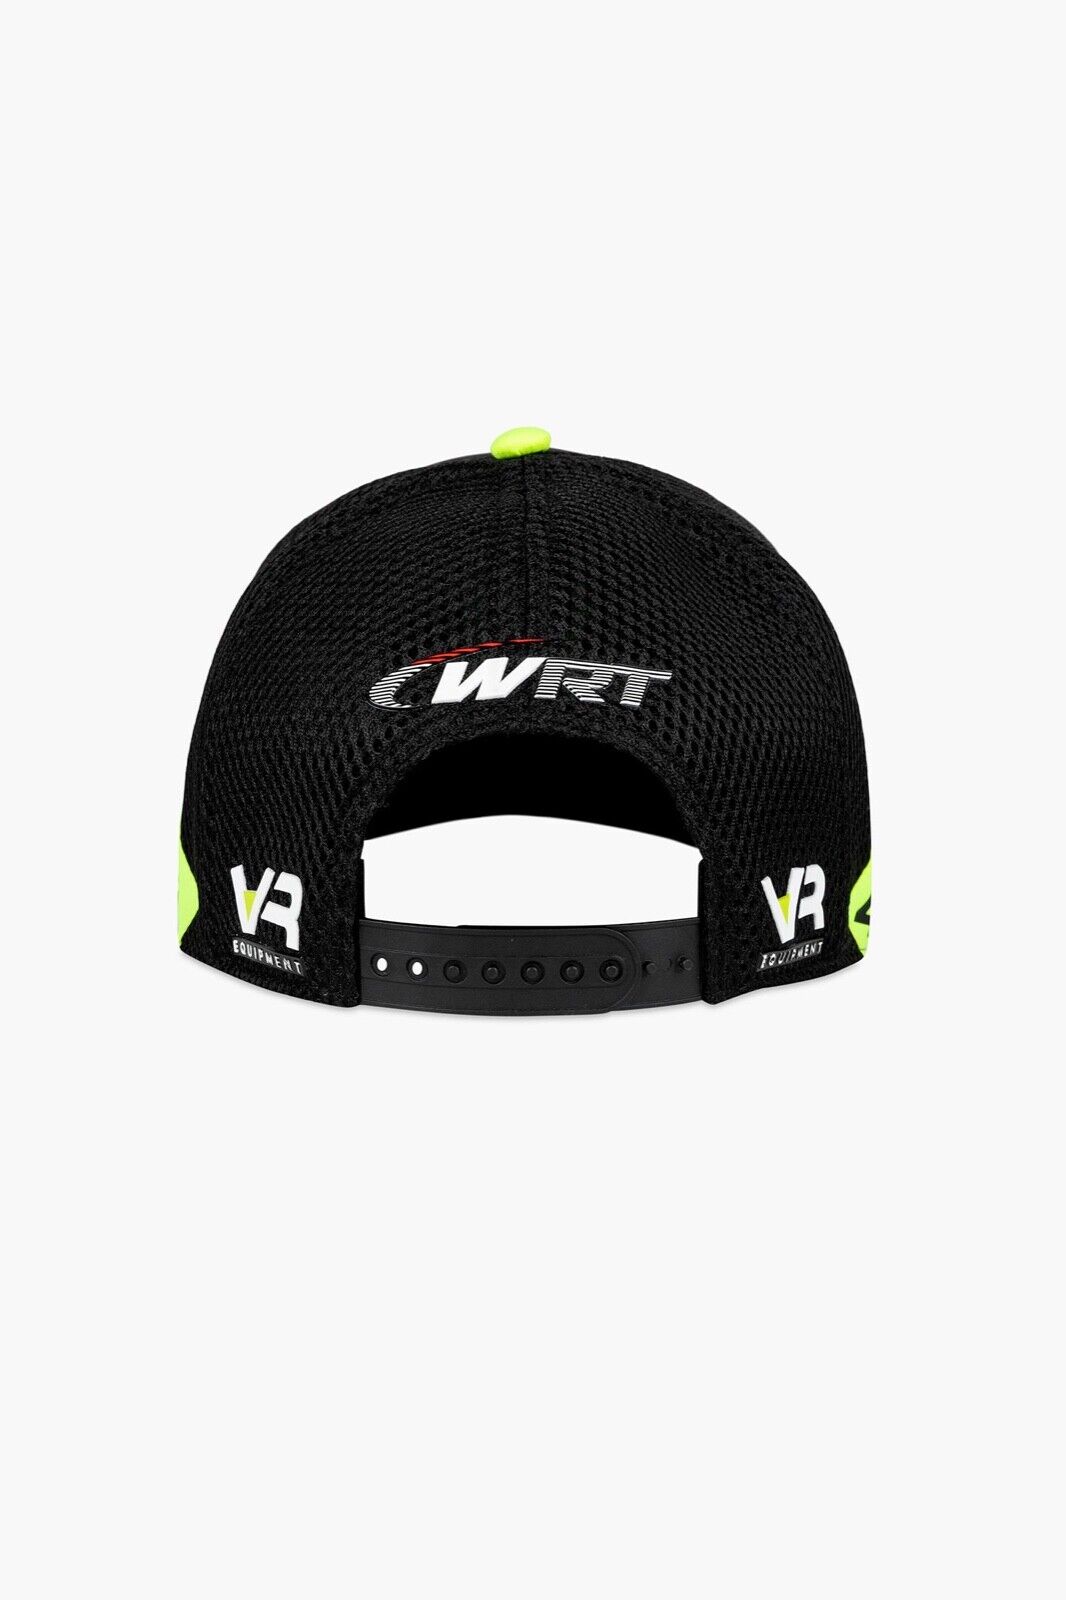 VR46 Official Valentino Rossi Wrt Monster Truckers Baseball Cap - Momca 450904